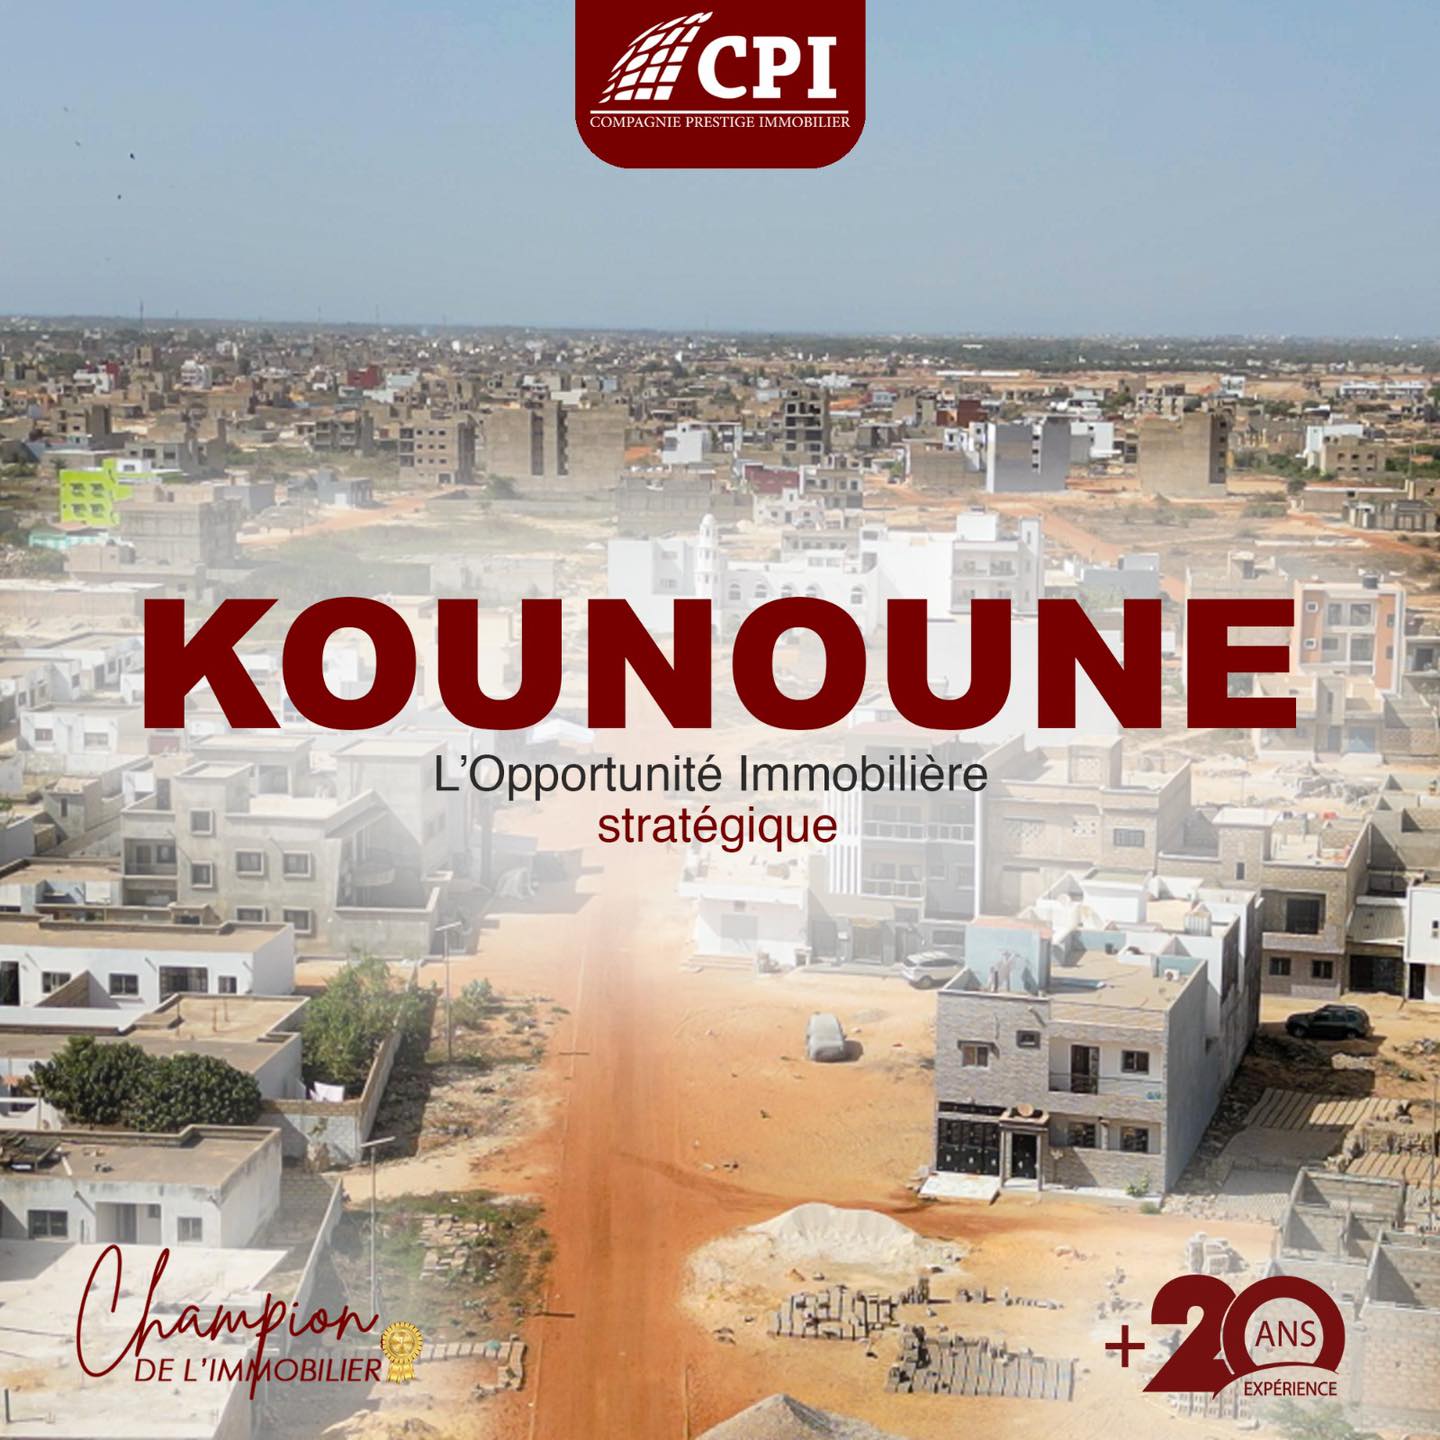 Kounoune, Un environnement sécurisé et convivial.